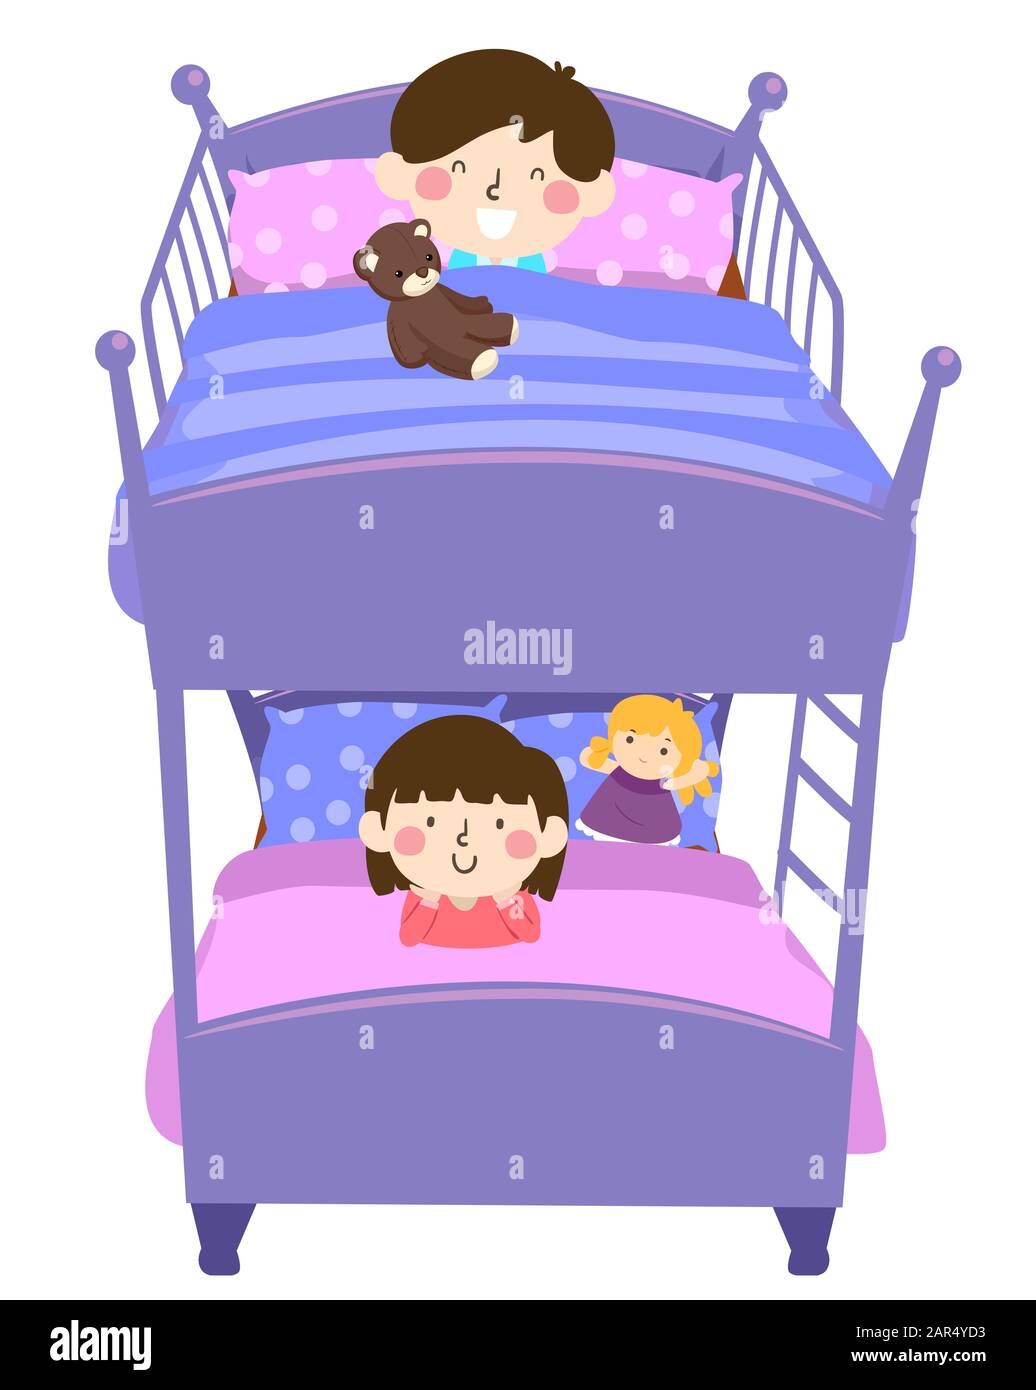 Illustrazione dei capretti in un letto doppio della piattaforma con capretto sul ponte superiore con un orsacchiotto e una ragazza del capretto Sotto con una bambola Foto Stock